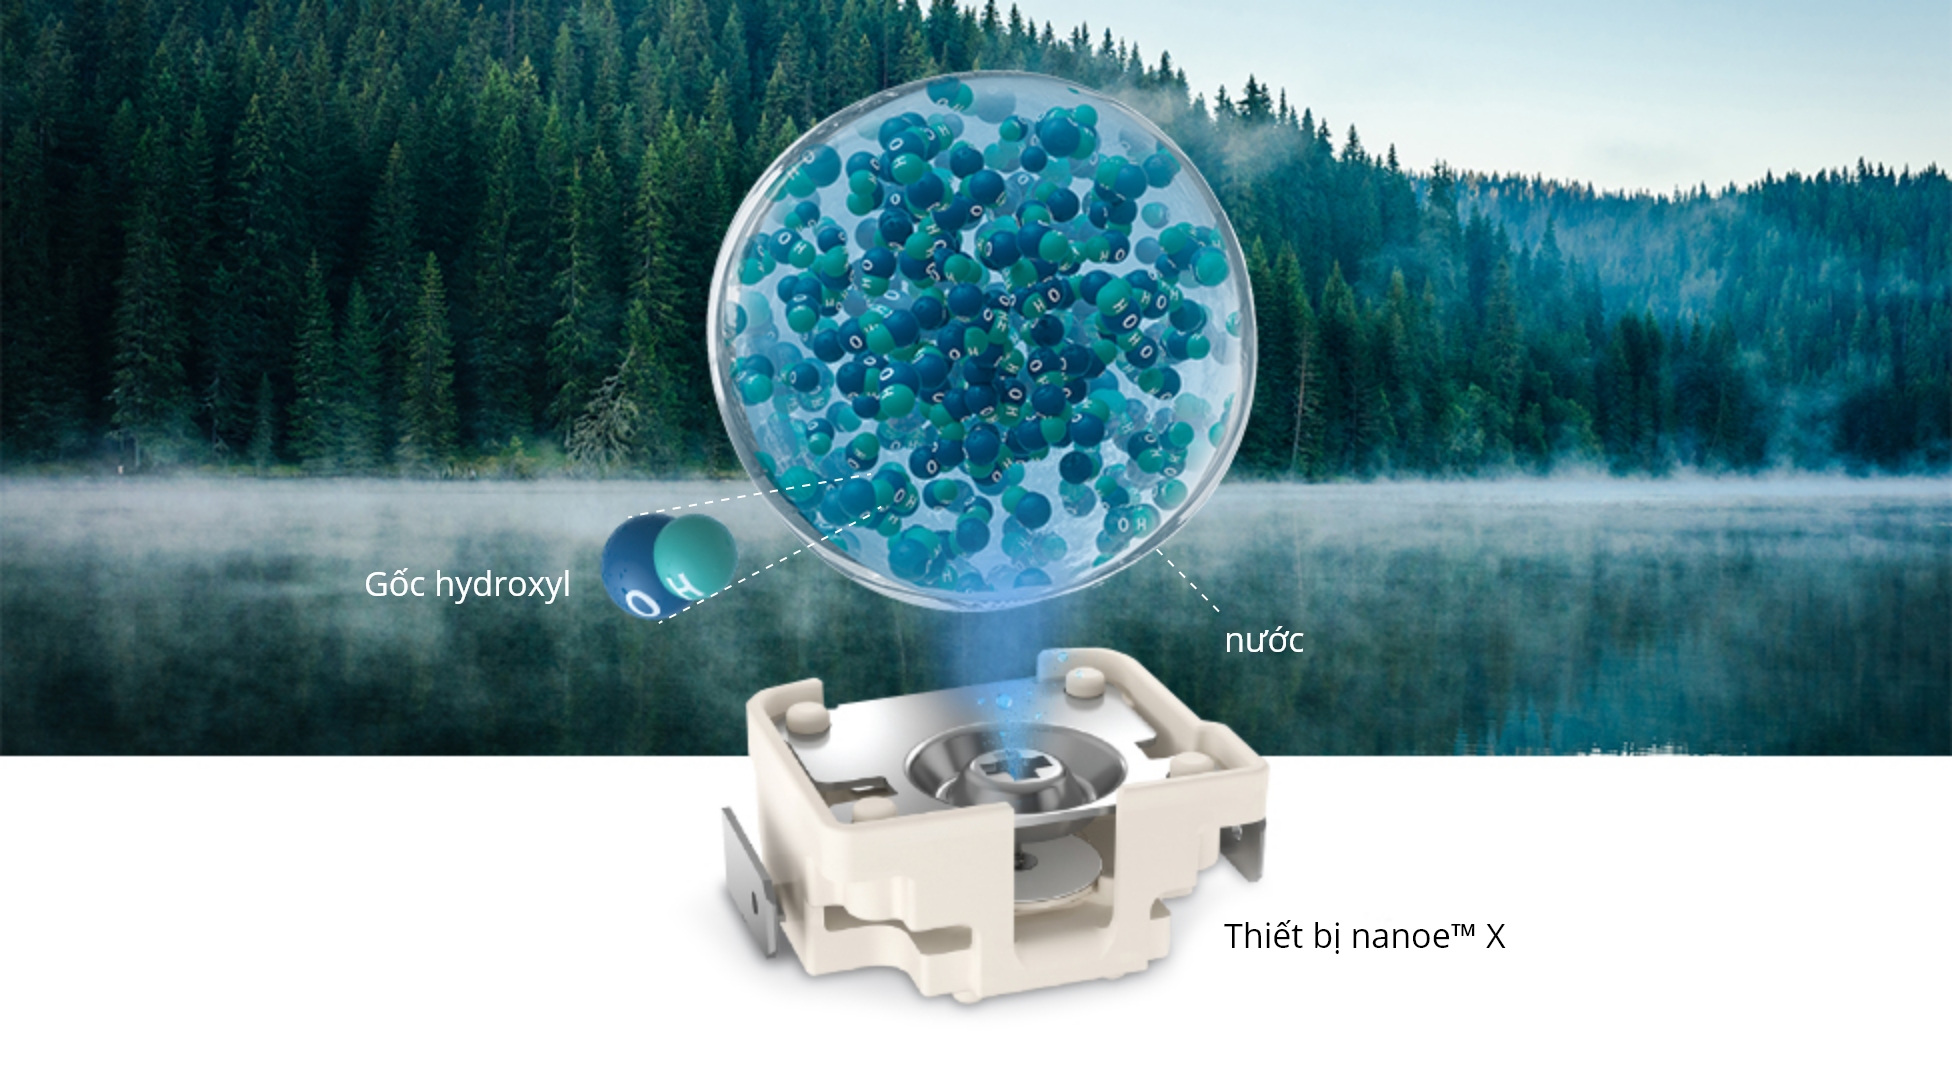 Hình ảnh nanoe™ X đang được phát ra từ thiết bị và một khu rừng yên tĩnh cùng một bờ hồ đầy sương mù trên mặt nước.